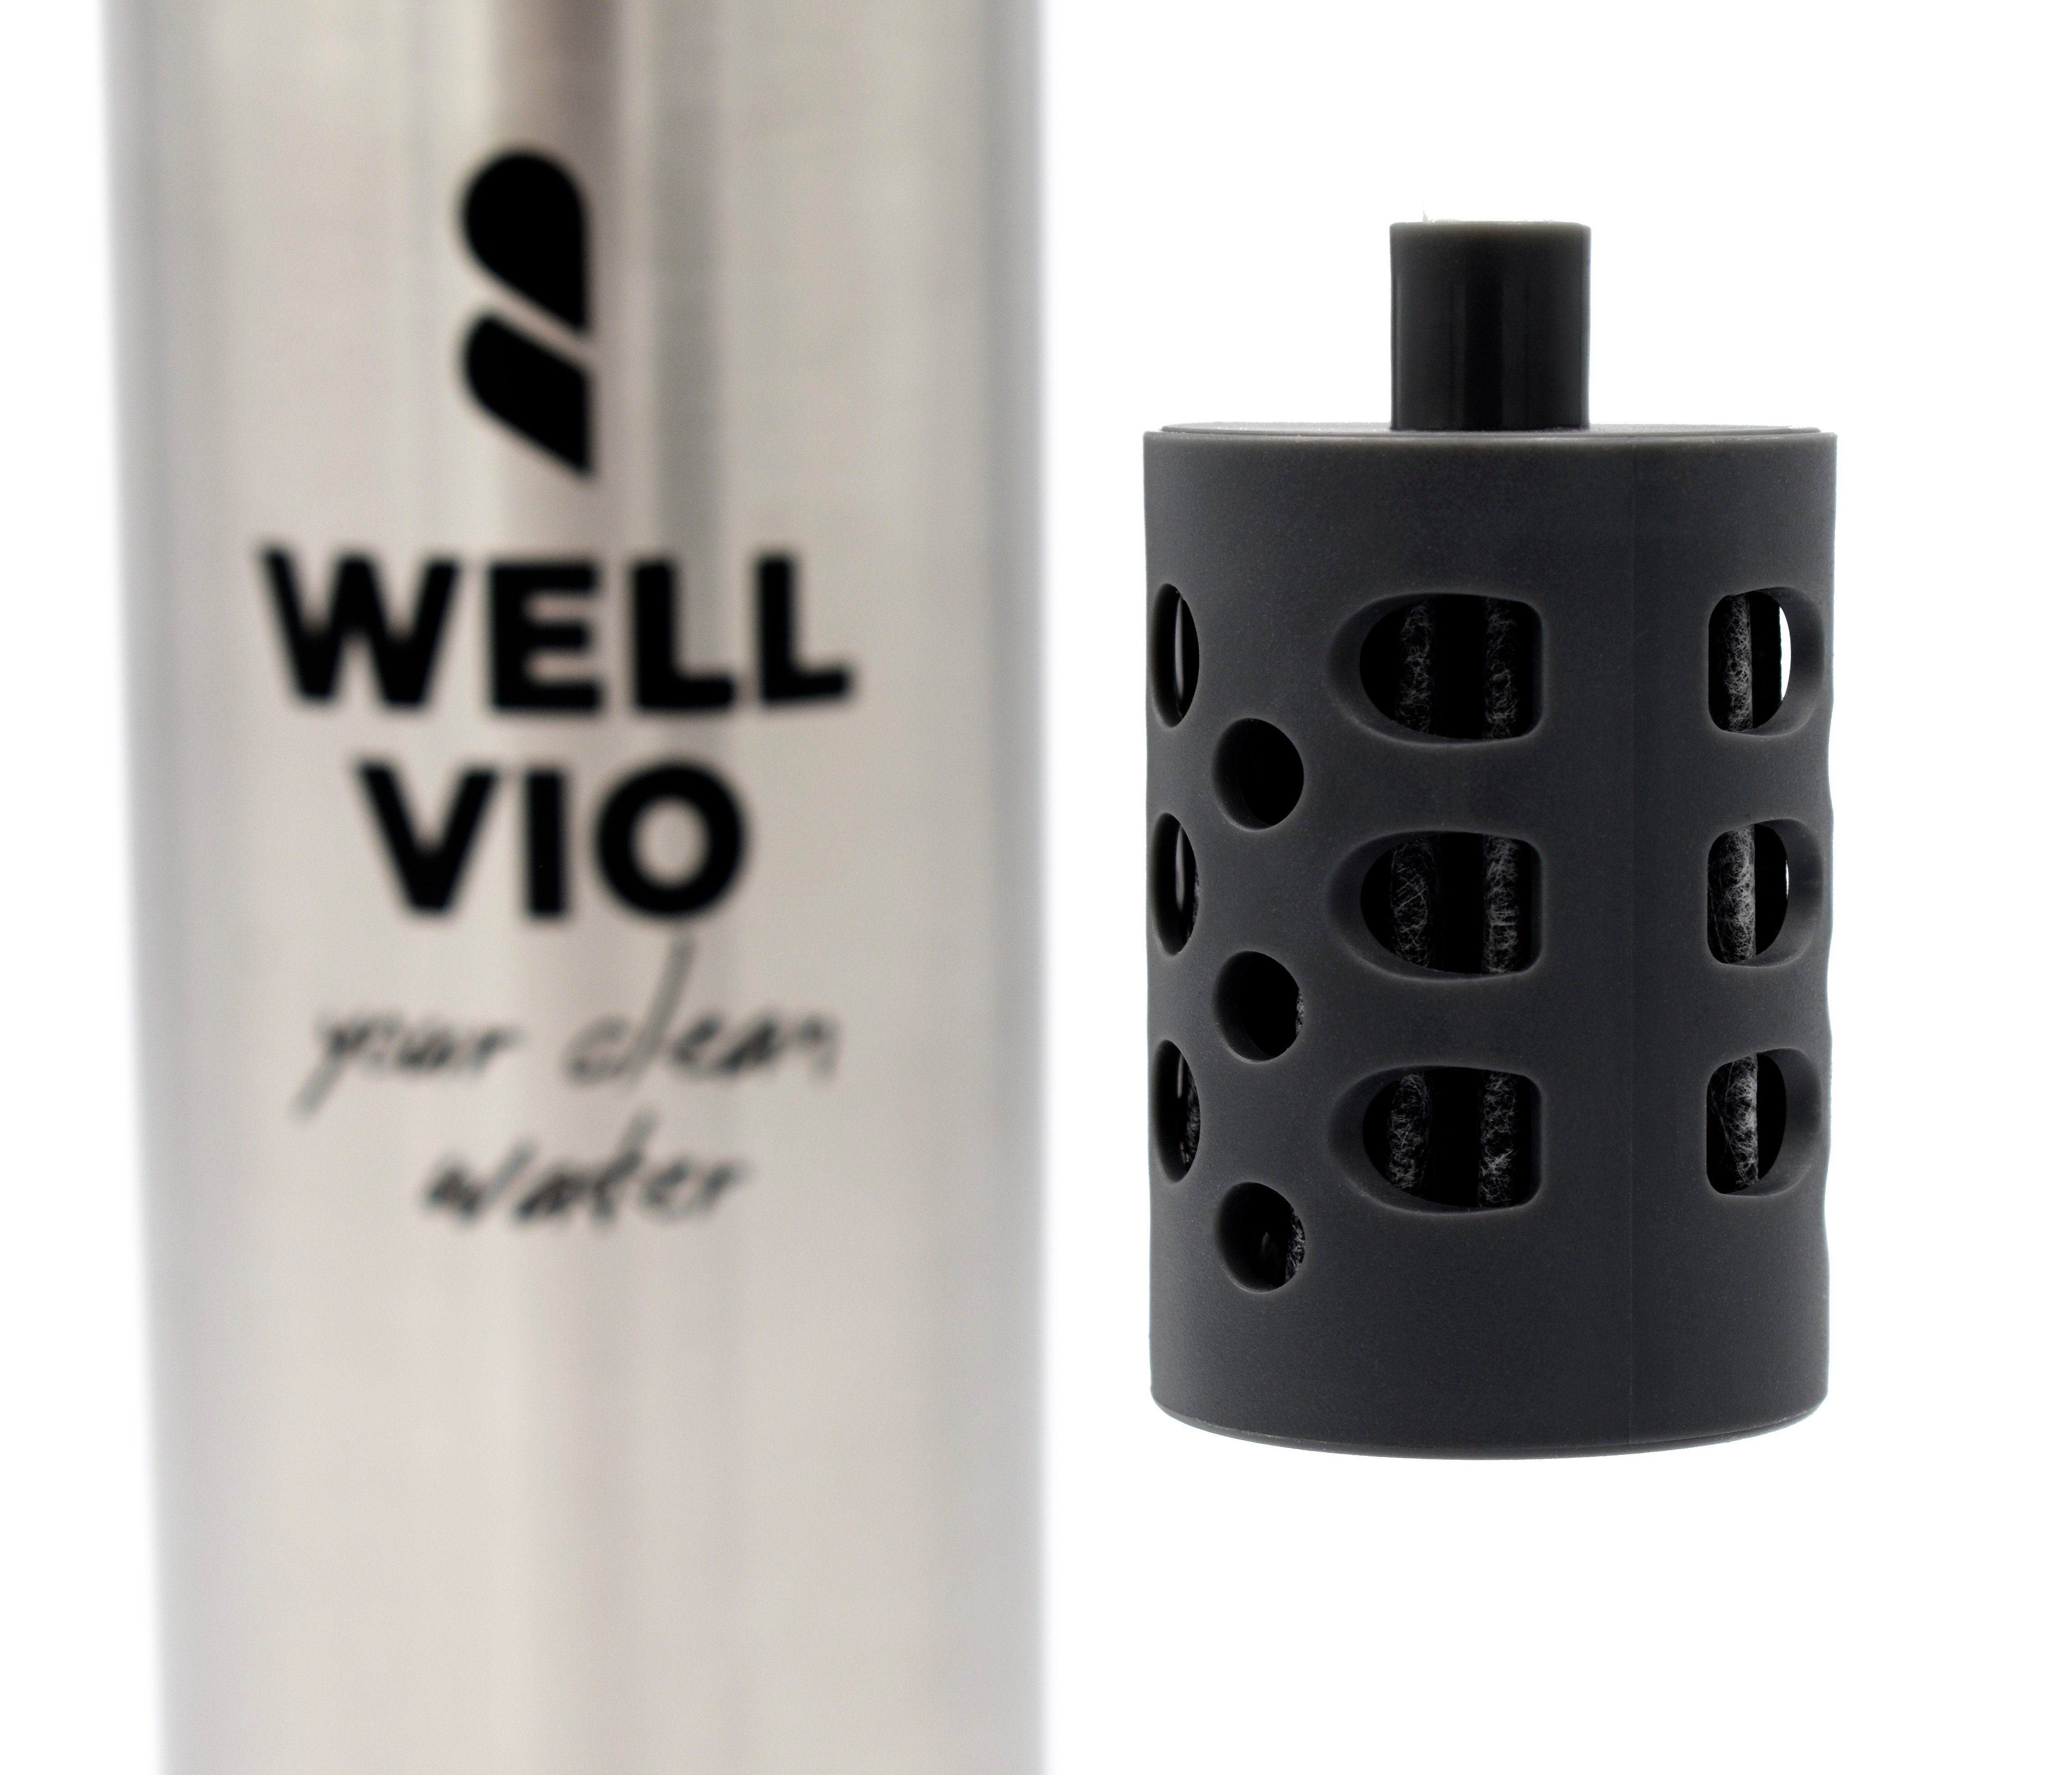 WELLVIO Trinkflasche Viobottle Edelstahl Filterflasche mit neuer Nano-Al2O3-Technologie